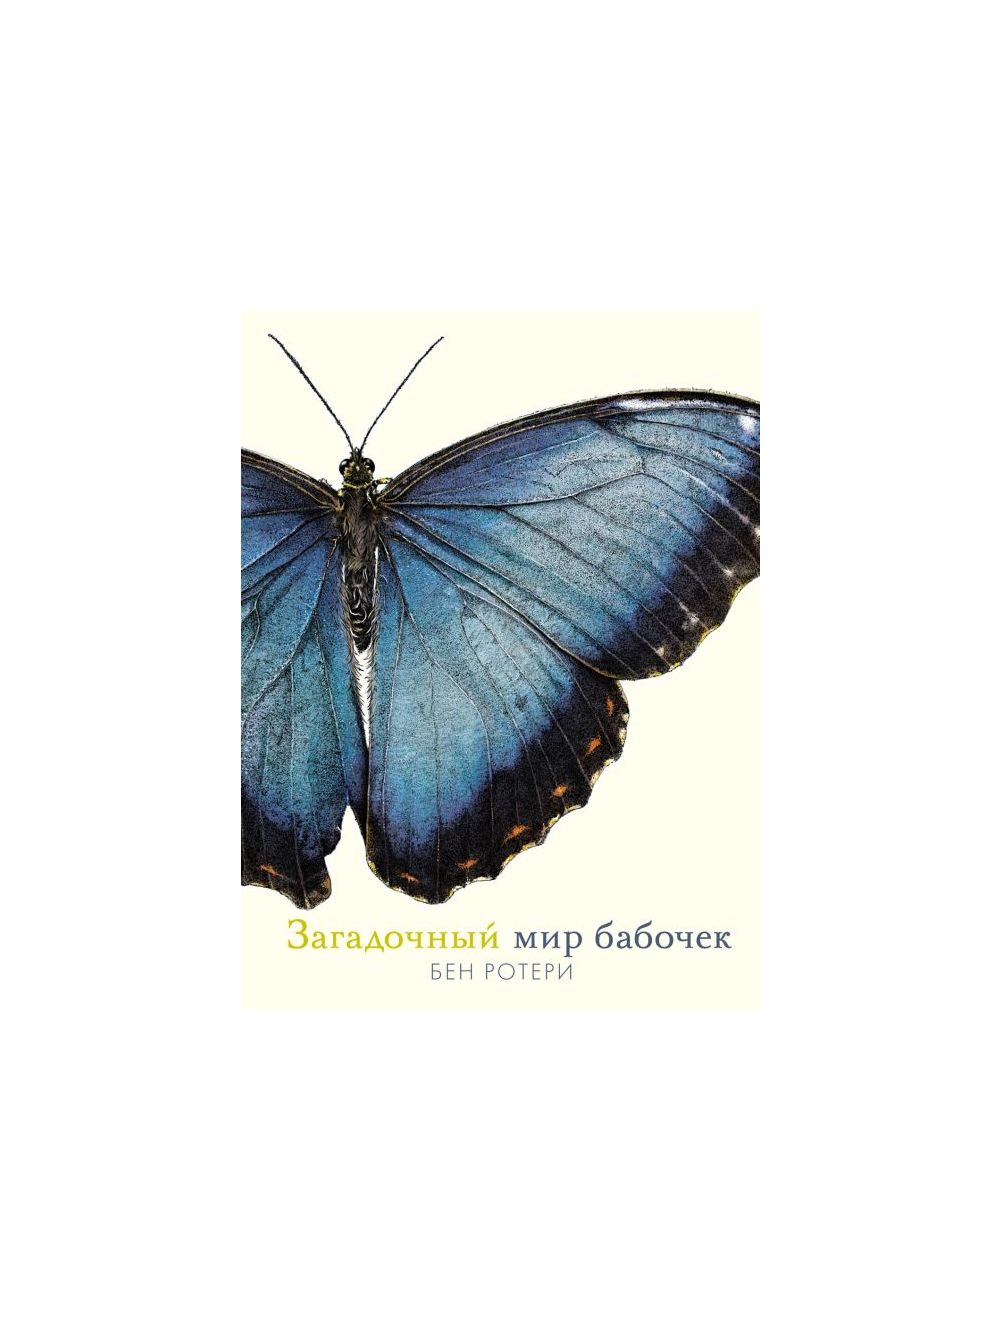 Бабочки в литературе. — 32 книги